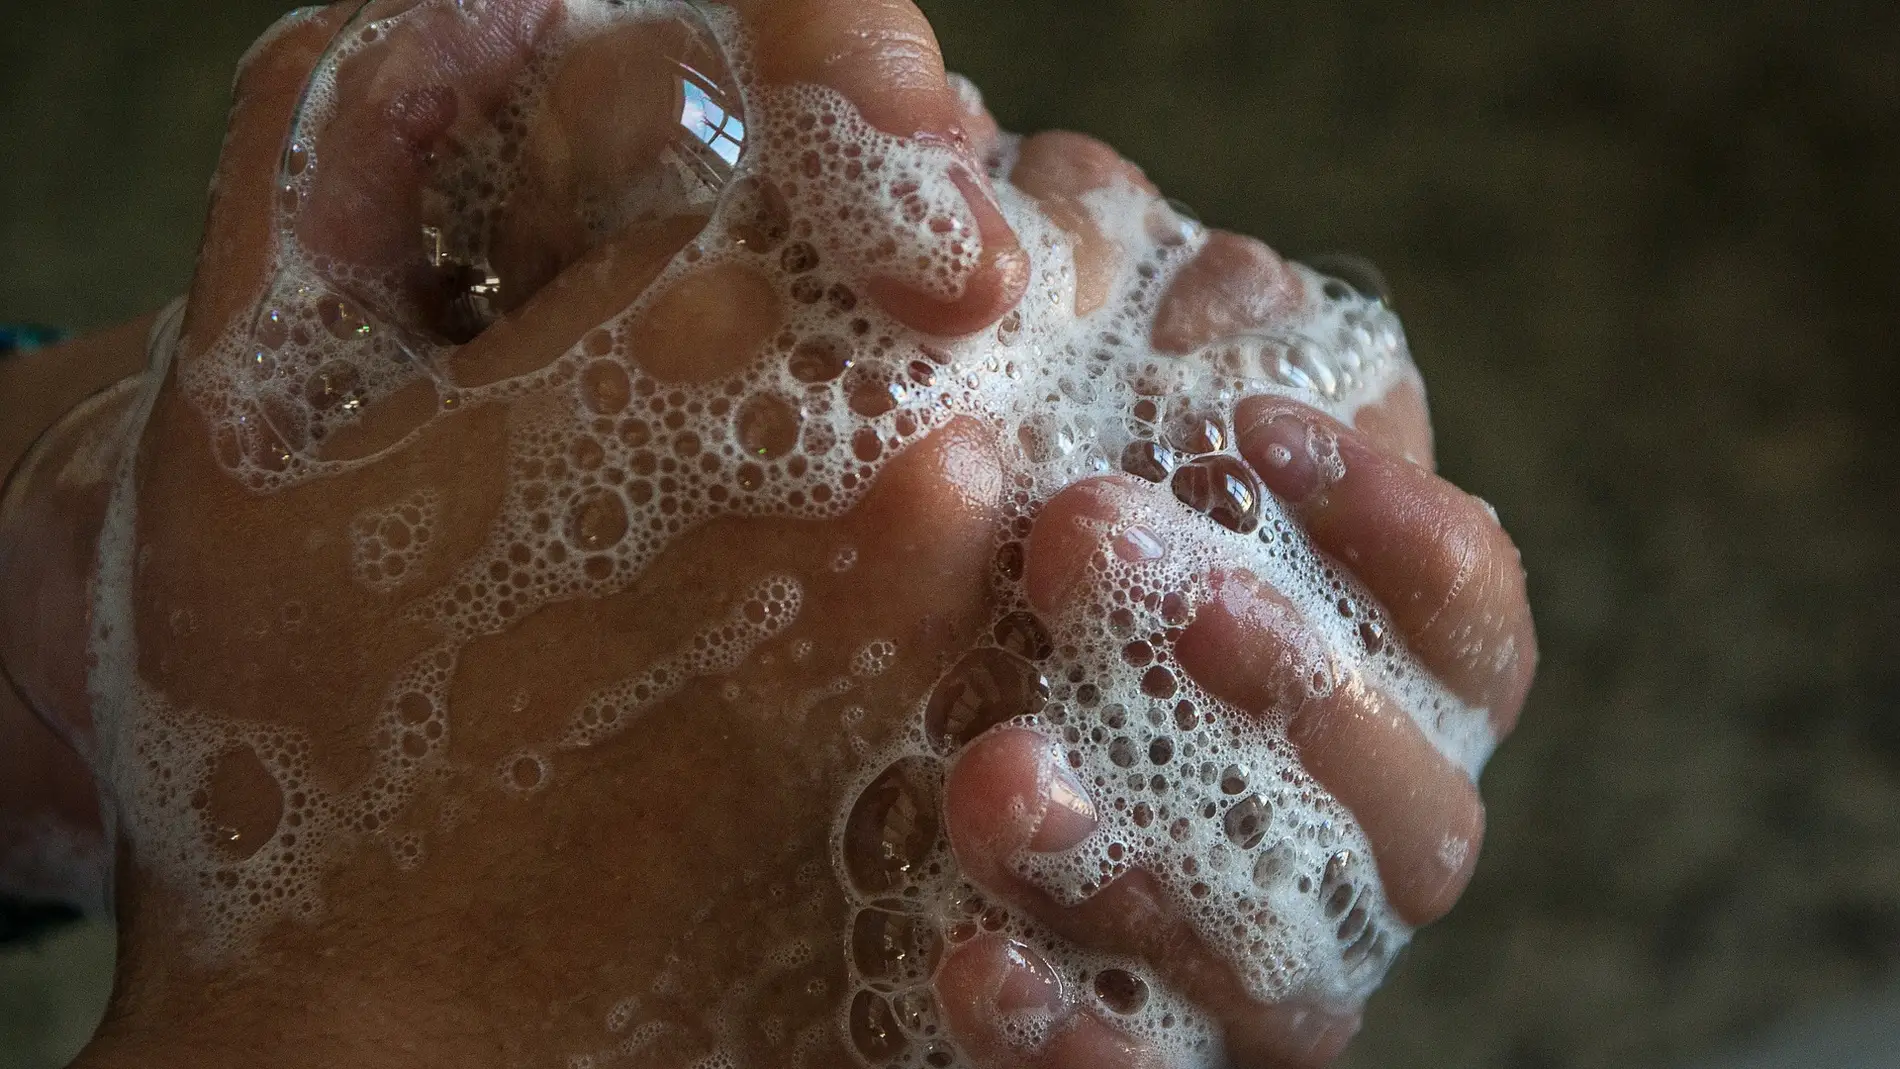 Los bajos porcentajes alertan para concienciar sobre los beneficios sanitarios de lavarse las manos